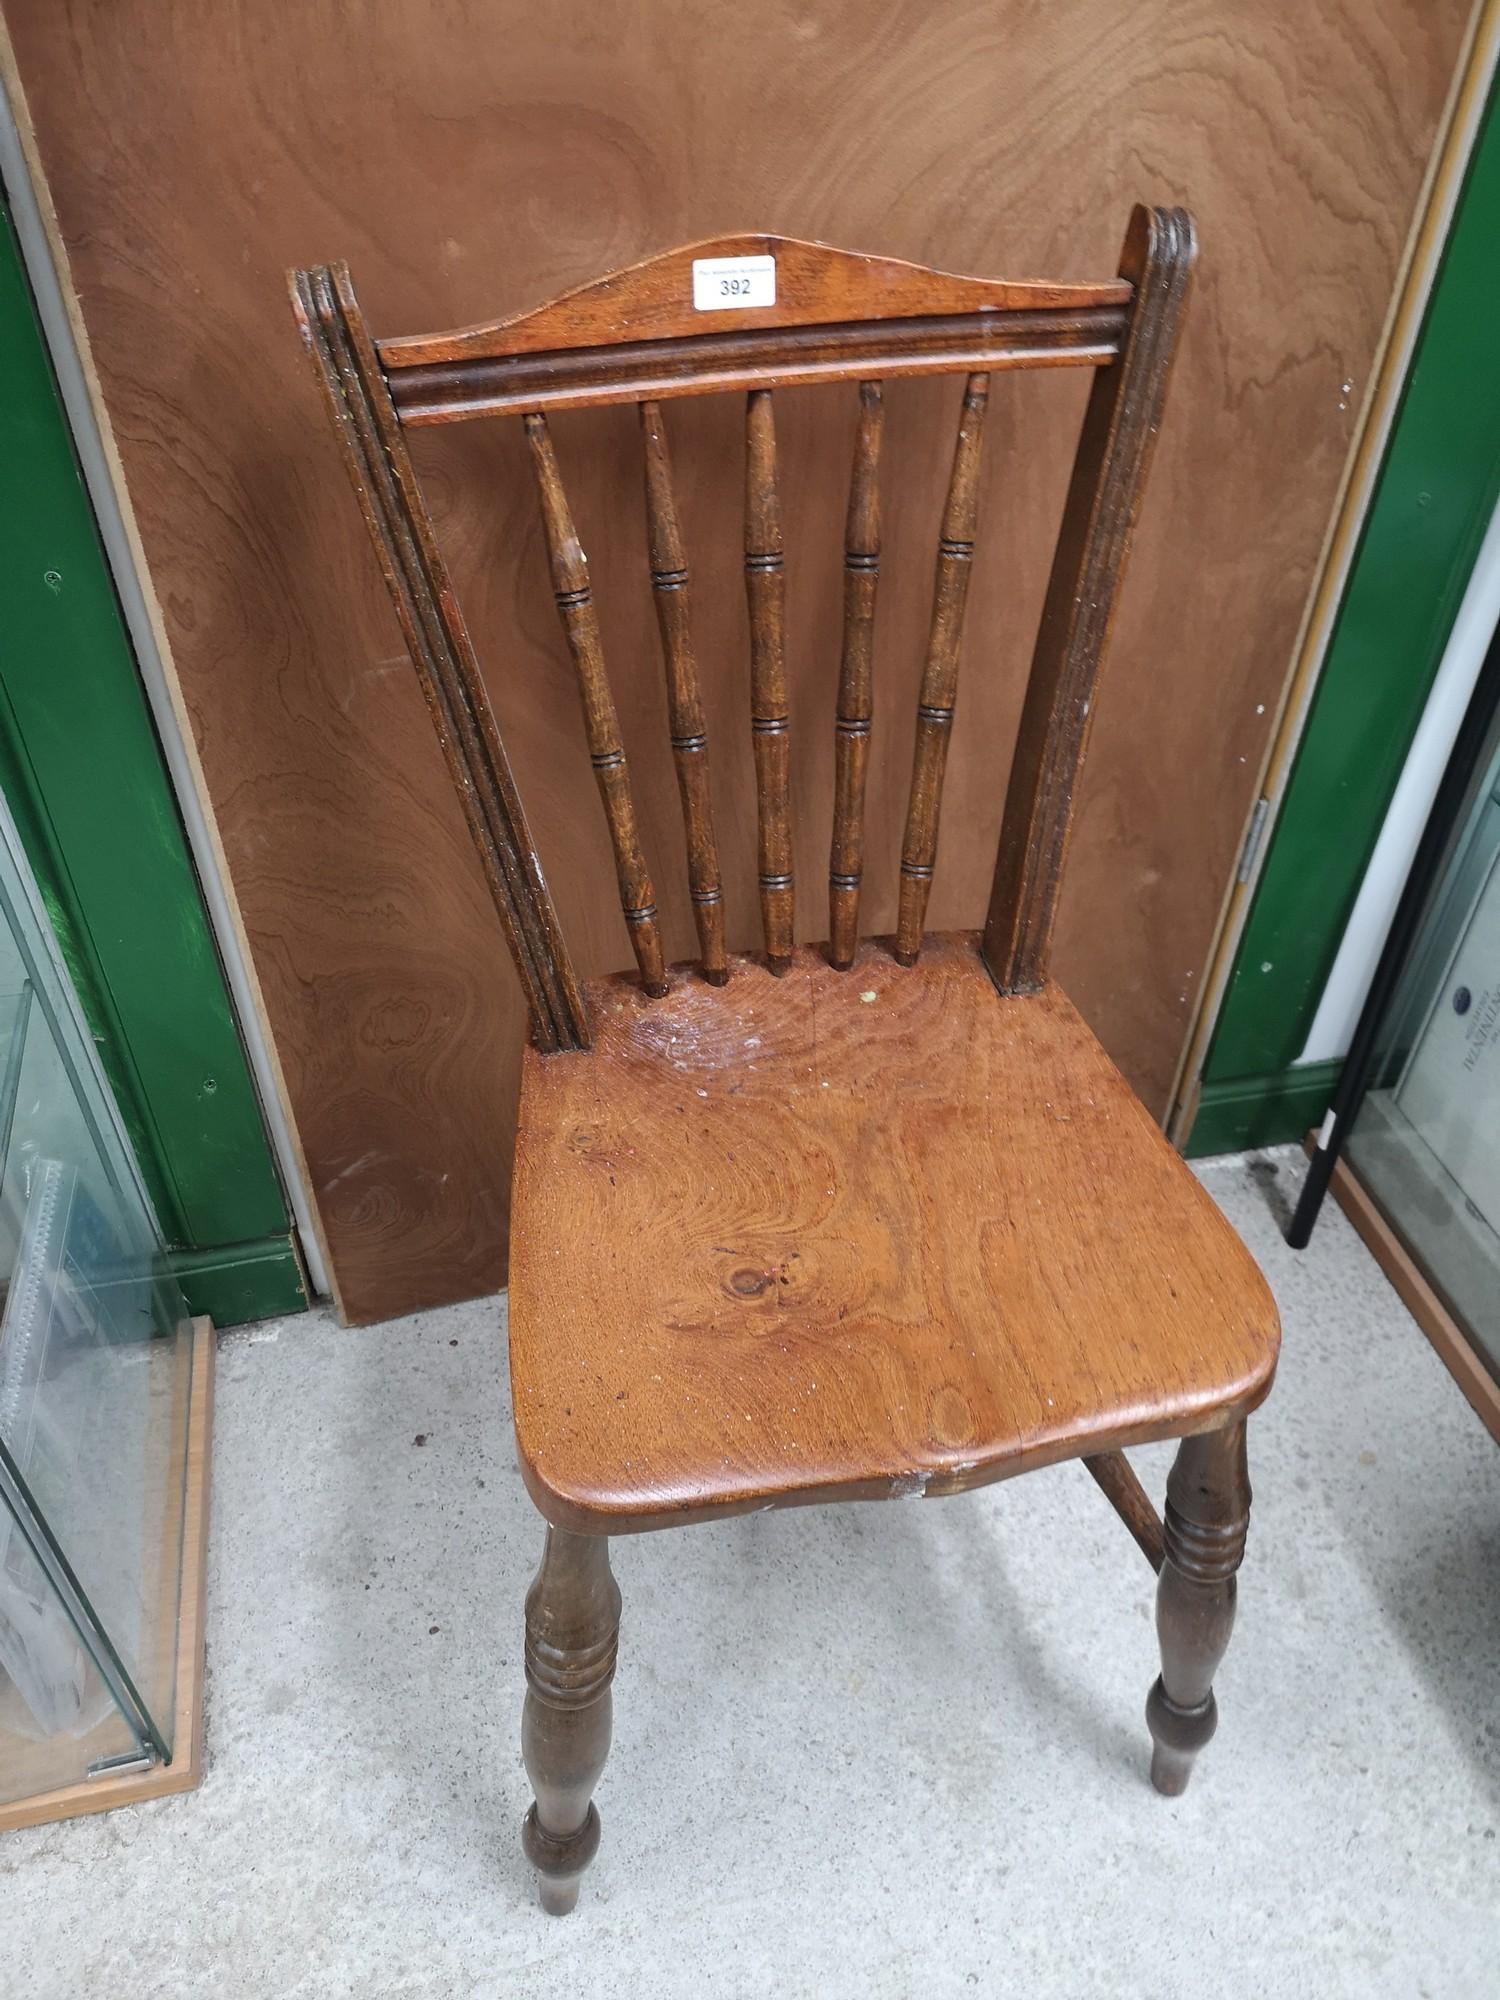 Antique farmhouse chair.